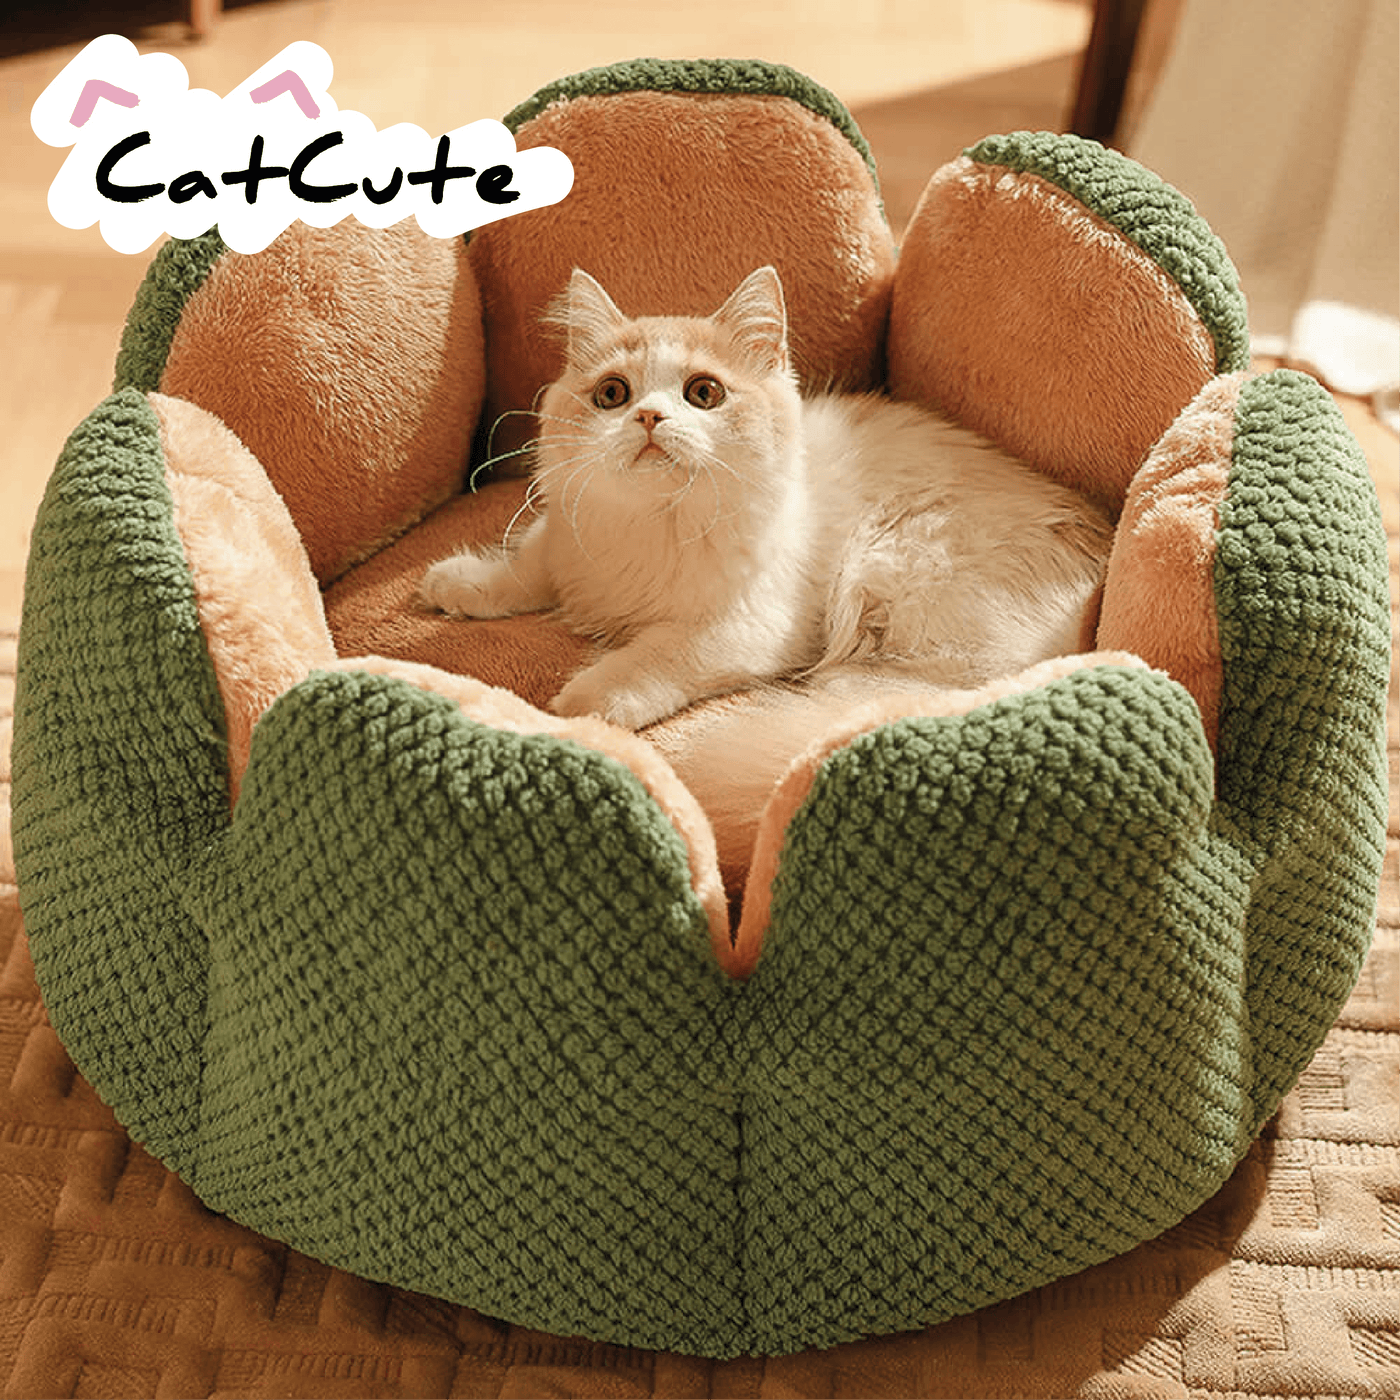 CatCute | Lit cactus confort pour chat - Zevessa